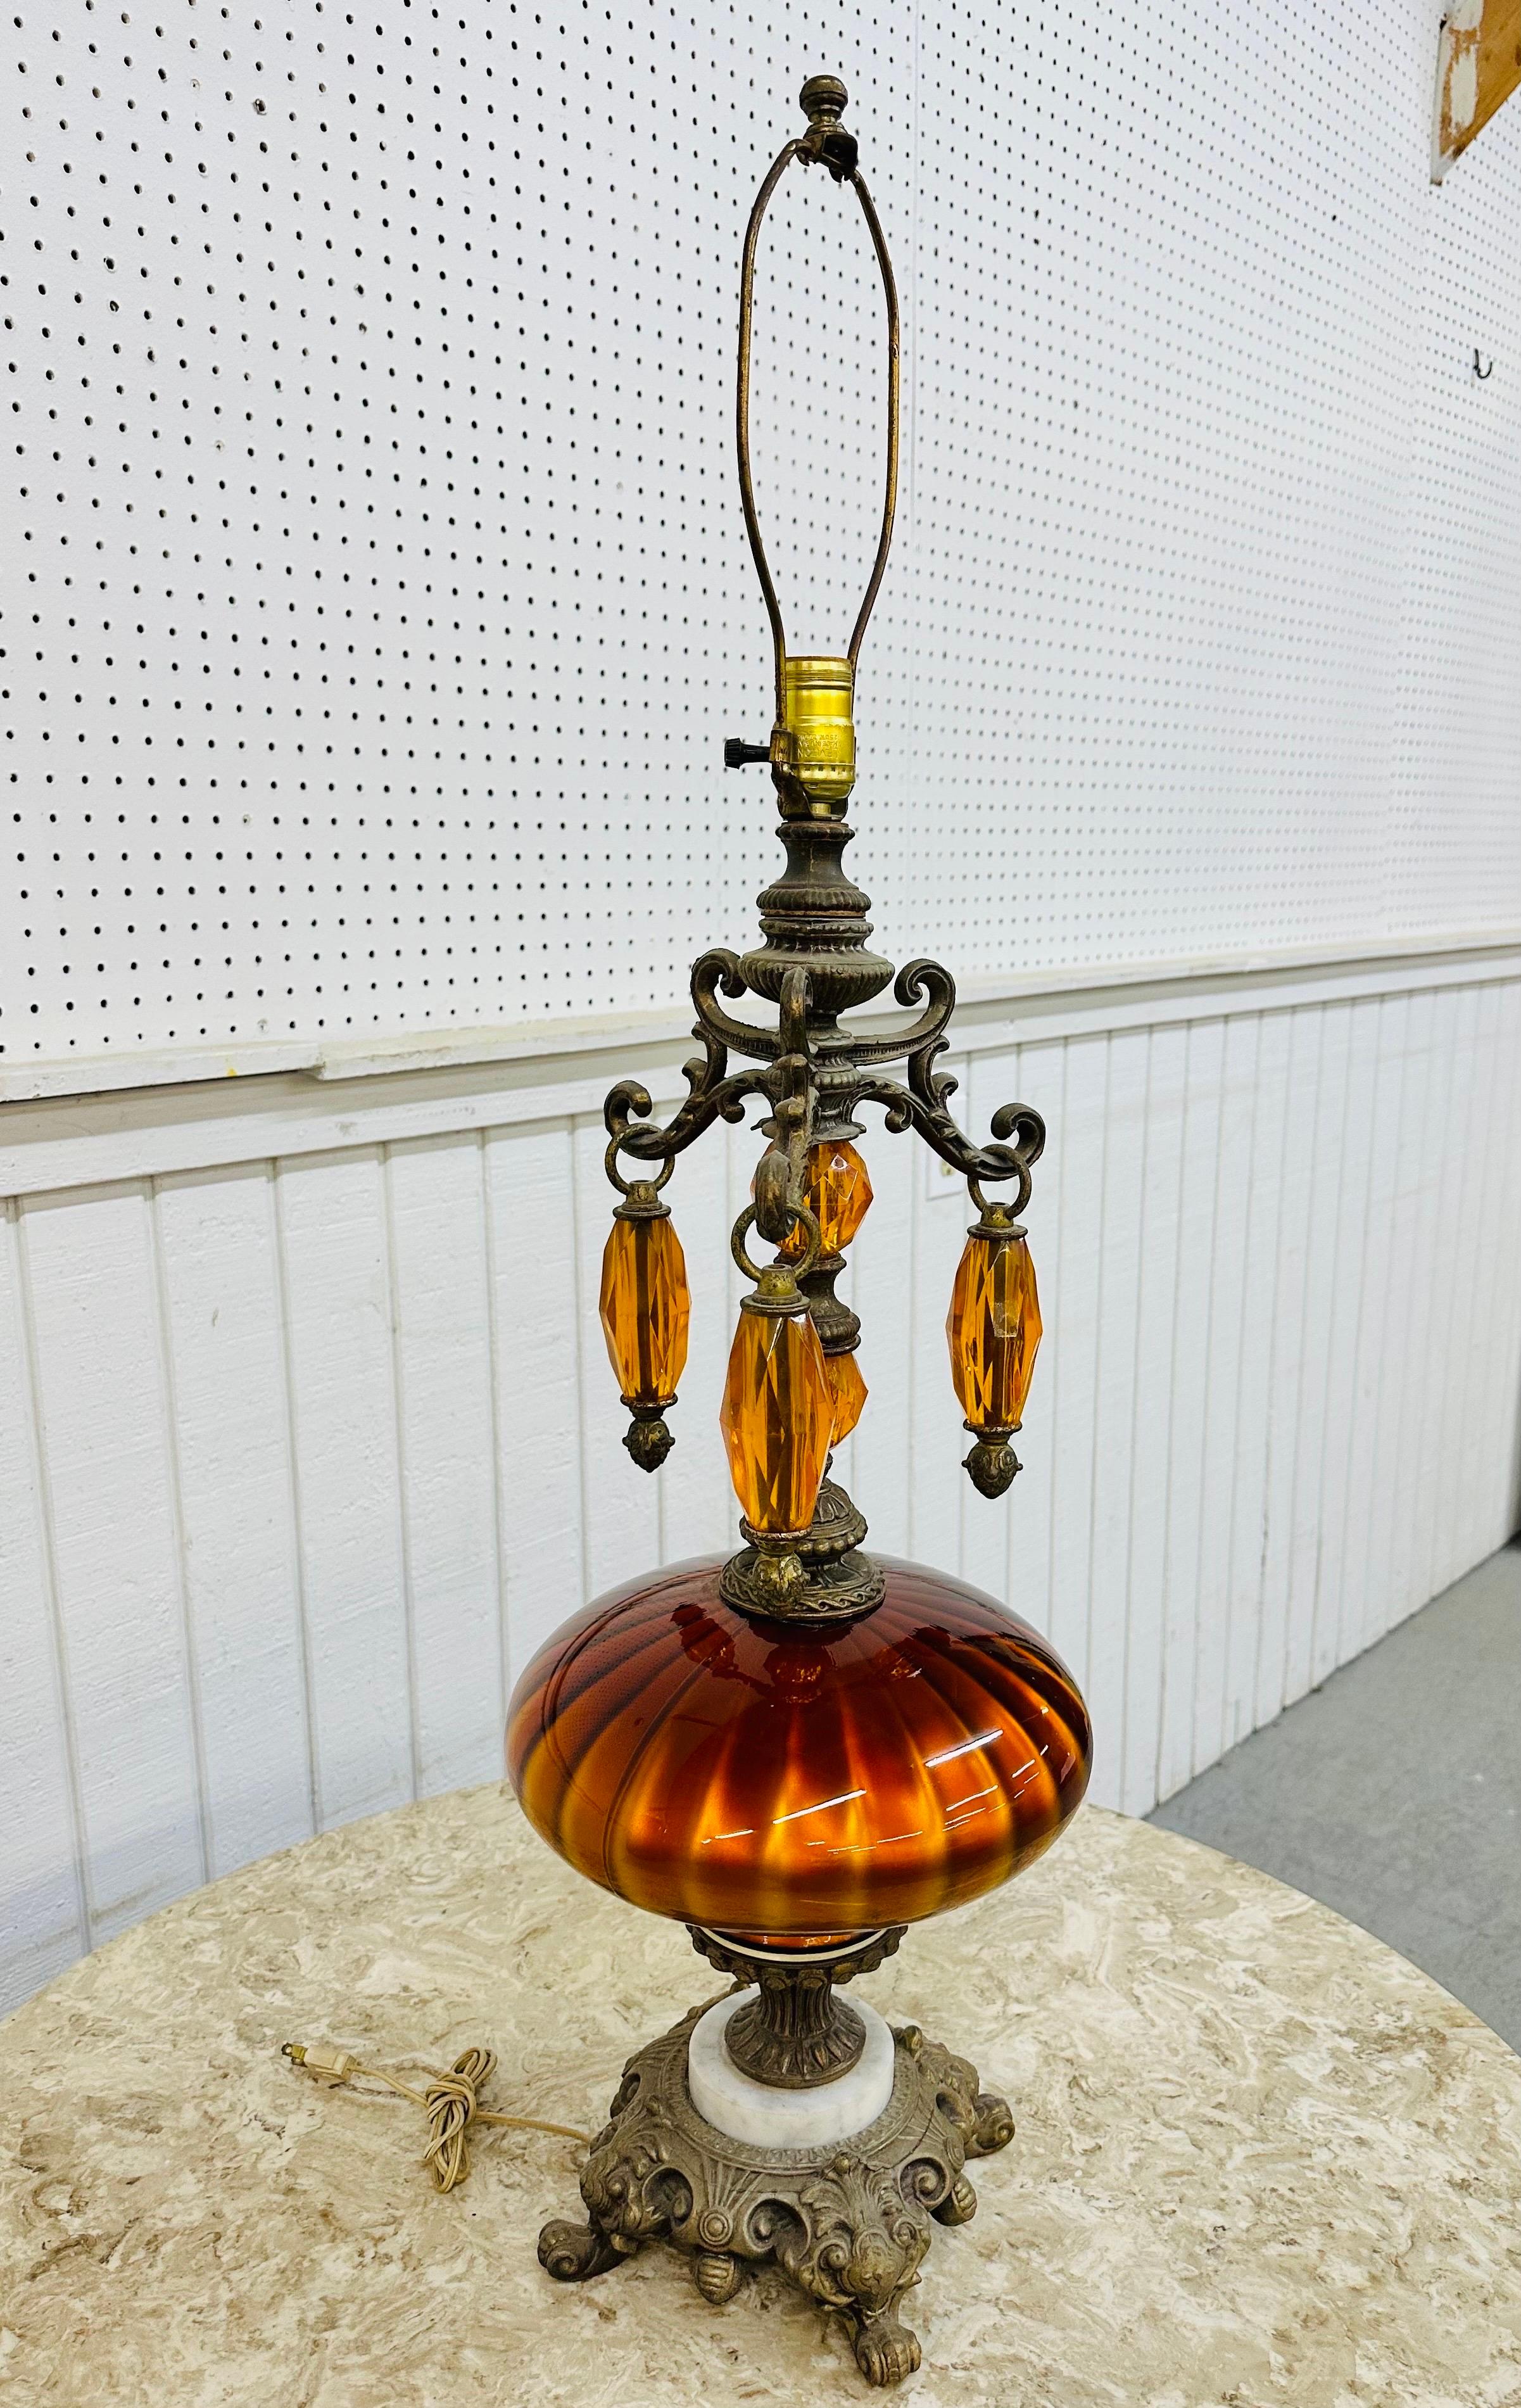 Cette annonce concerne une lampe de table en verre orange de style Hollywood Regency. Comprend une base en laiton et en marbre, un corps en verre orange, trois prismes en lucite suspendus, ainsi qu'une harpe et un cordon d'origine. Il s'agit d'une